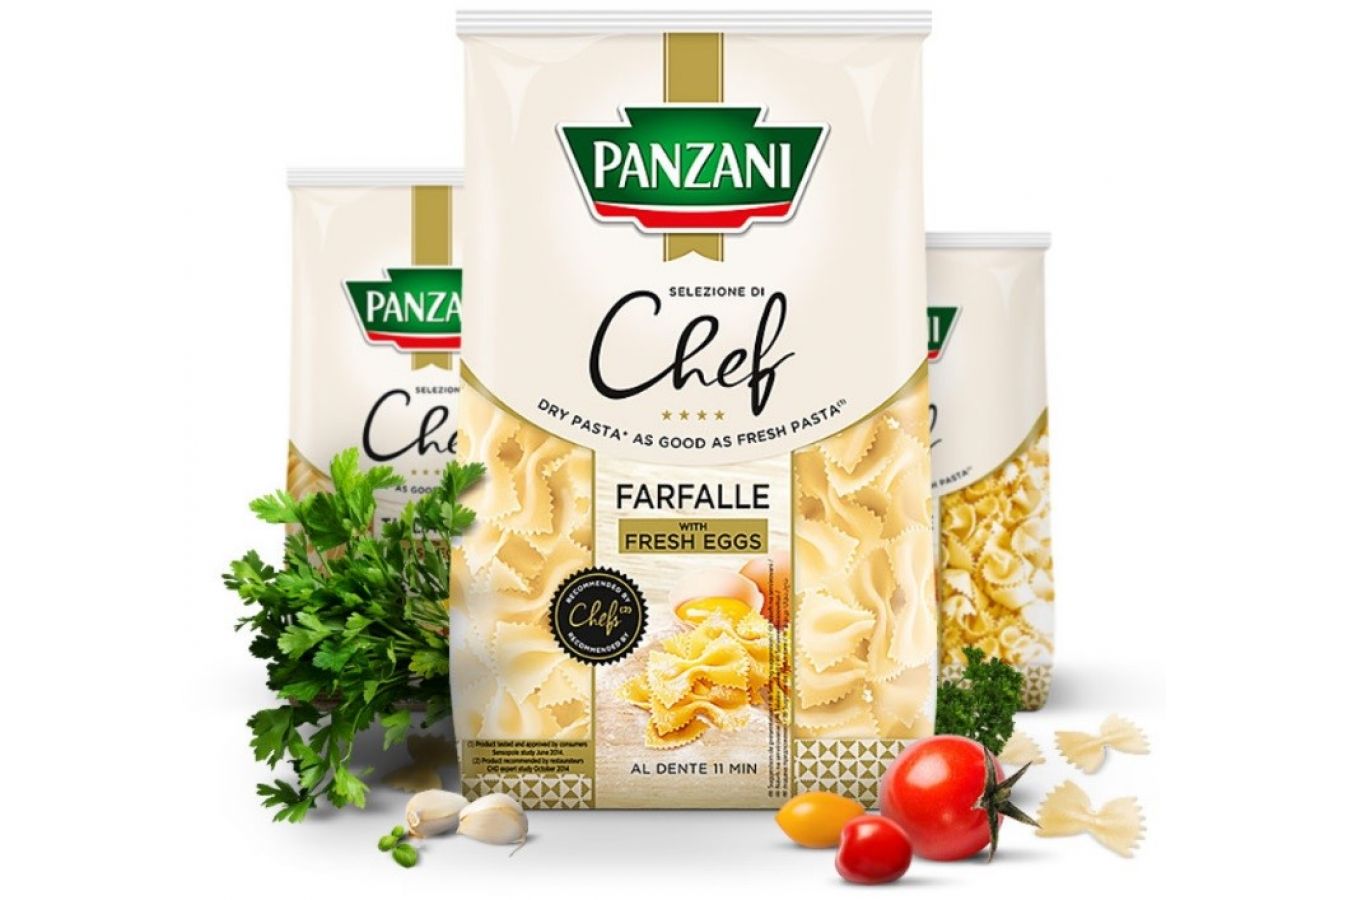 Panzani přichází s prémiovými vaječnými těstovinami Selezione di Chef